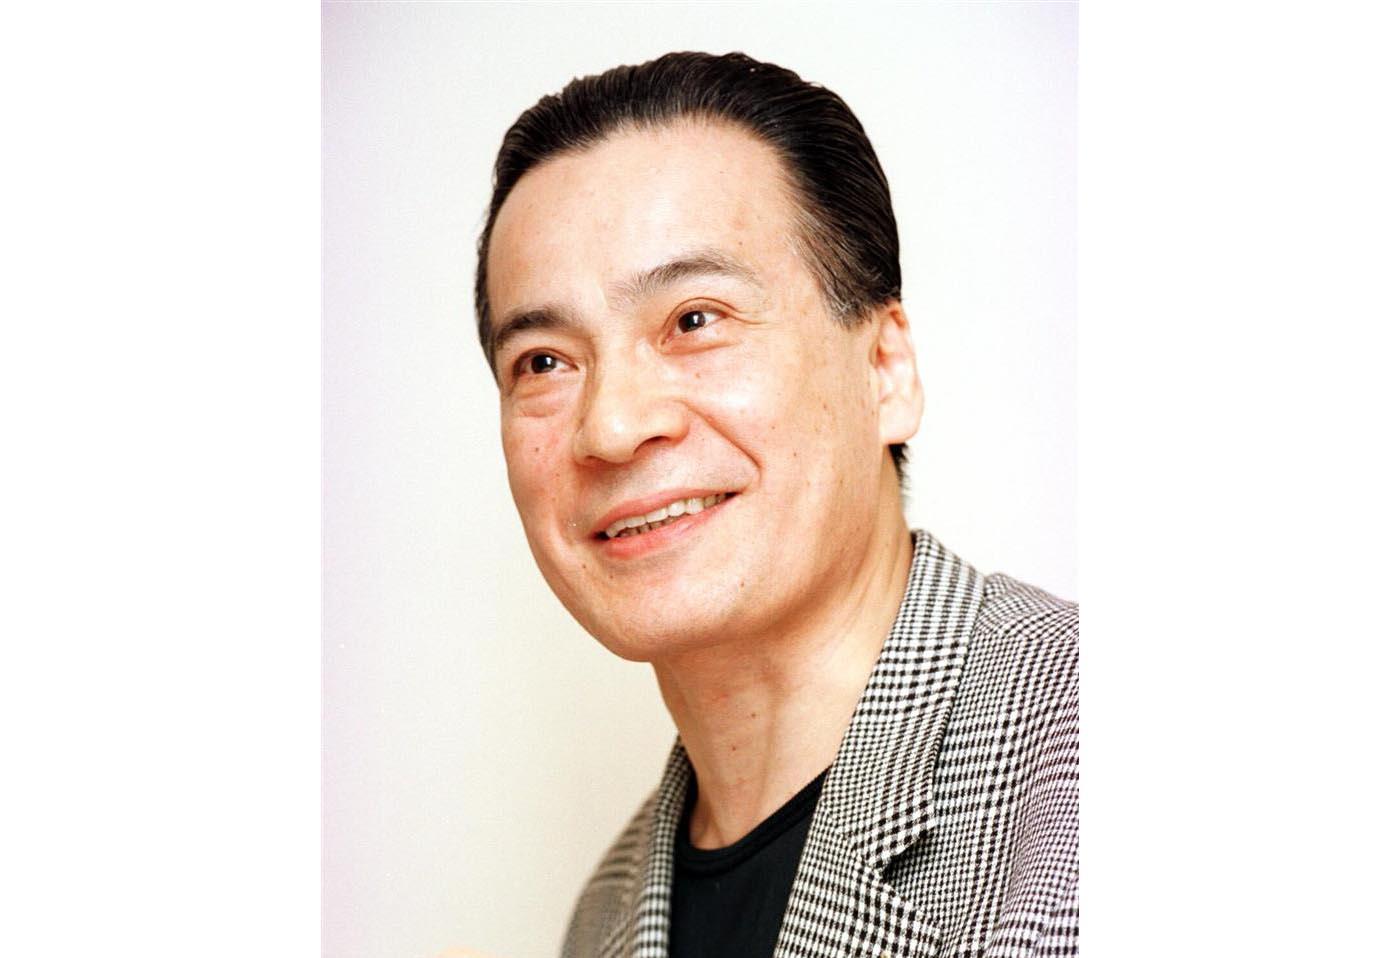 俳優の藤木孝さん自宅で死亡、自殺か